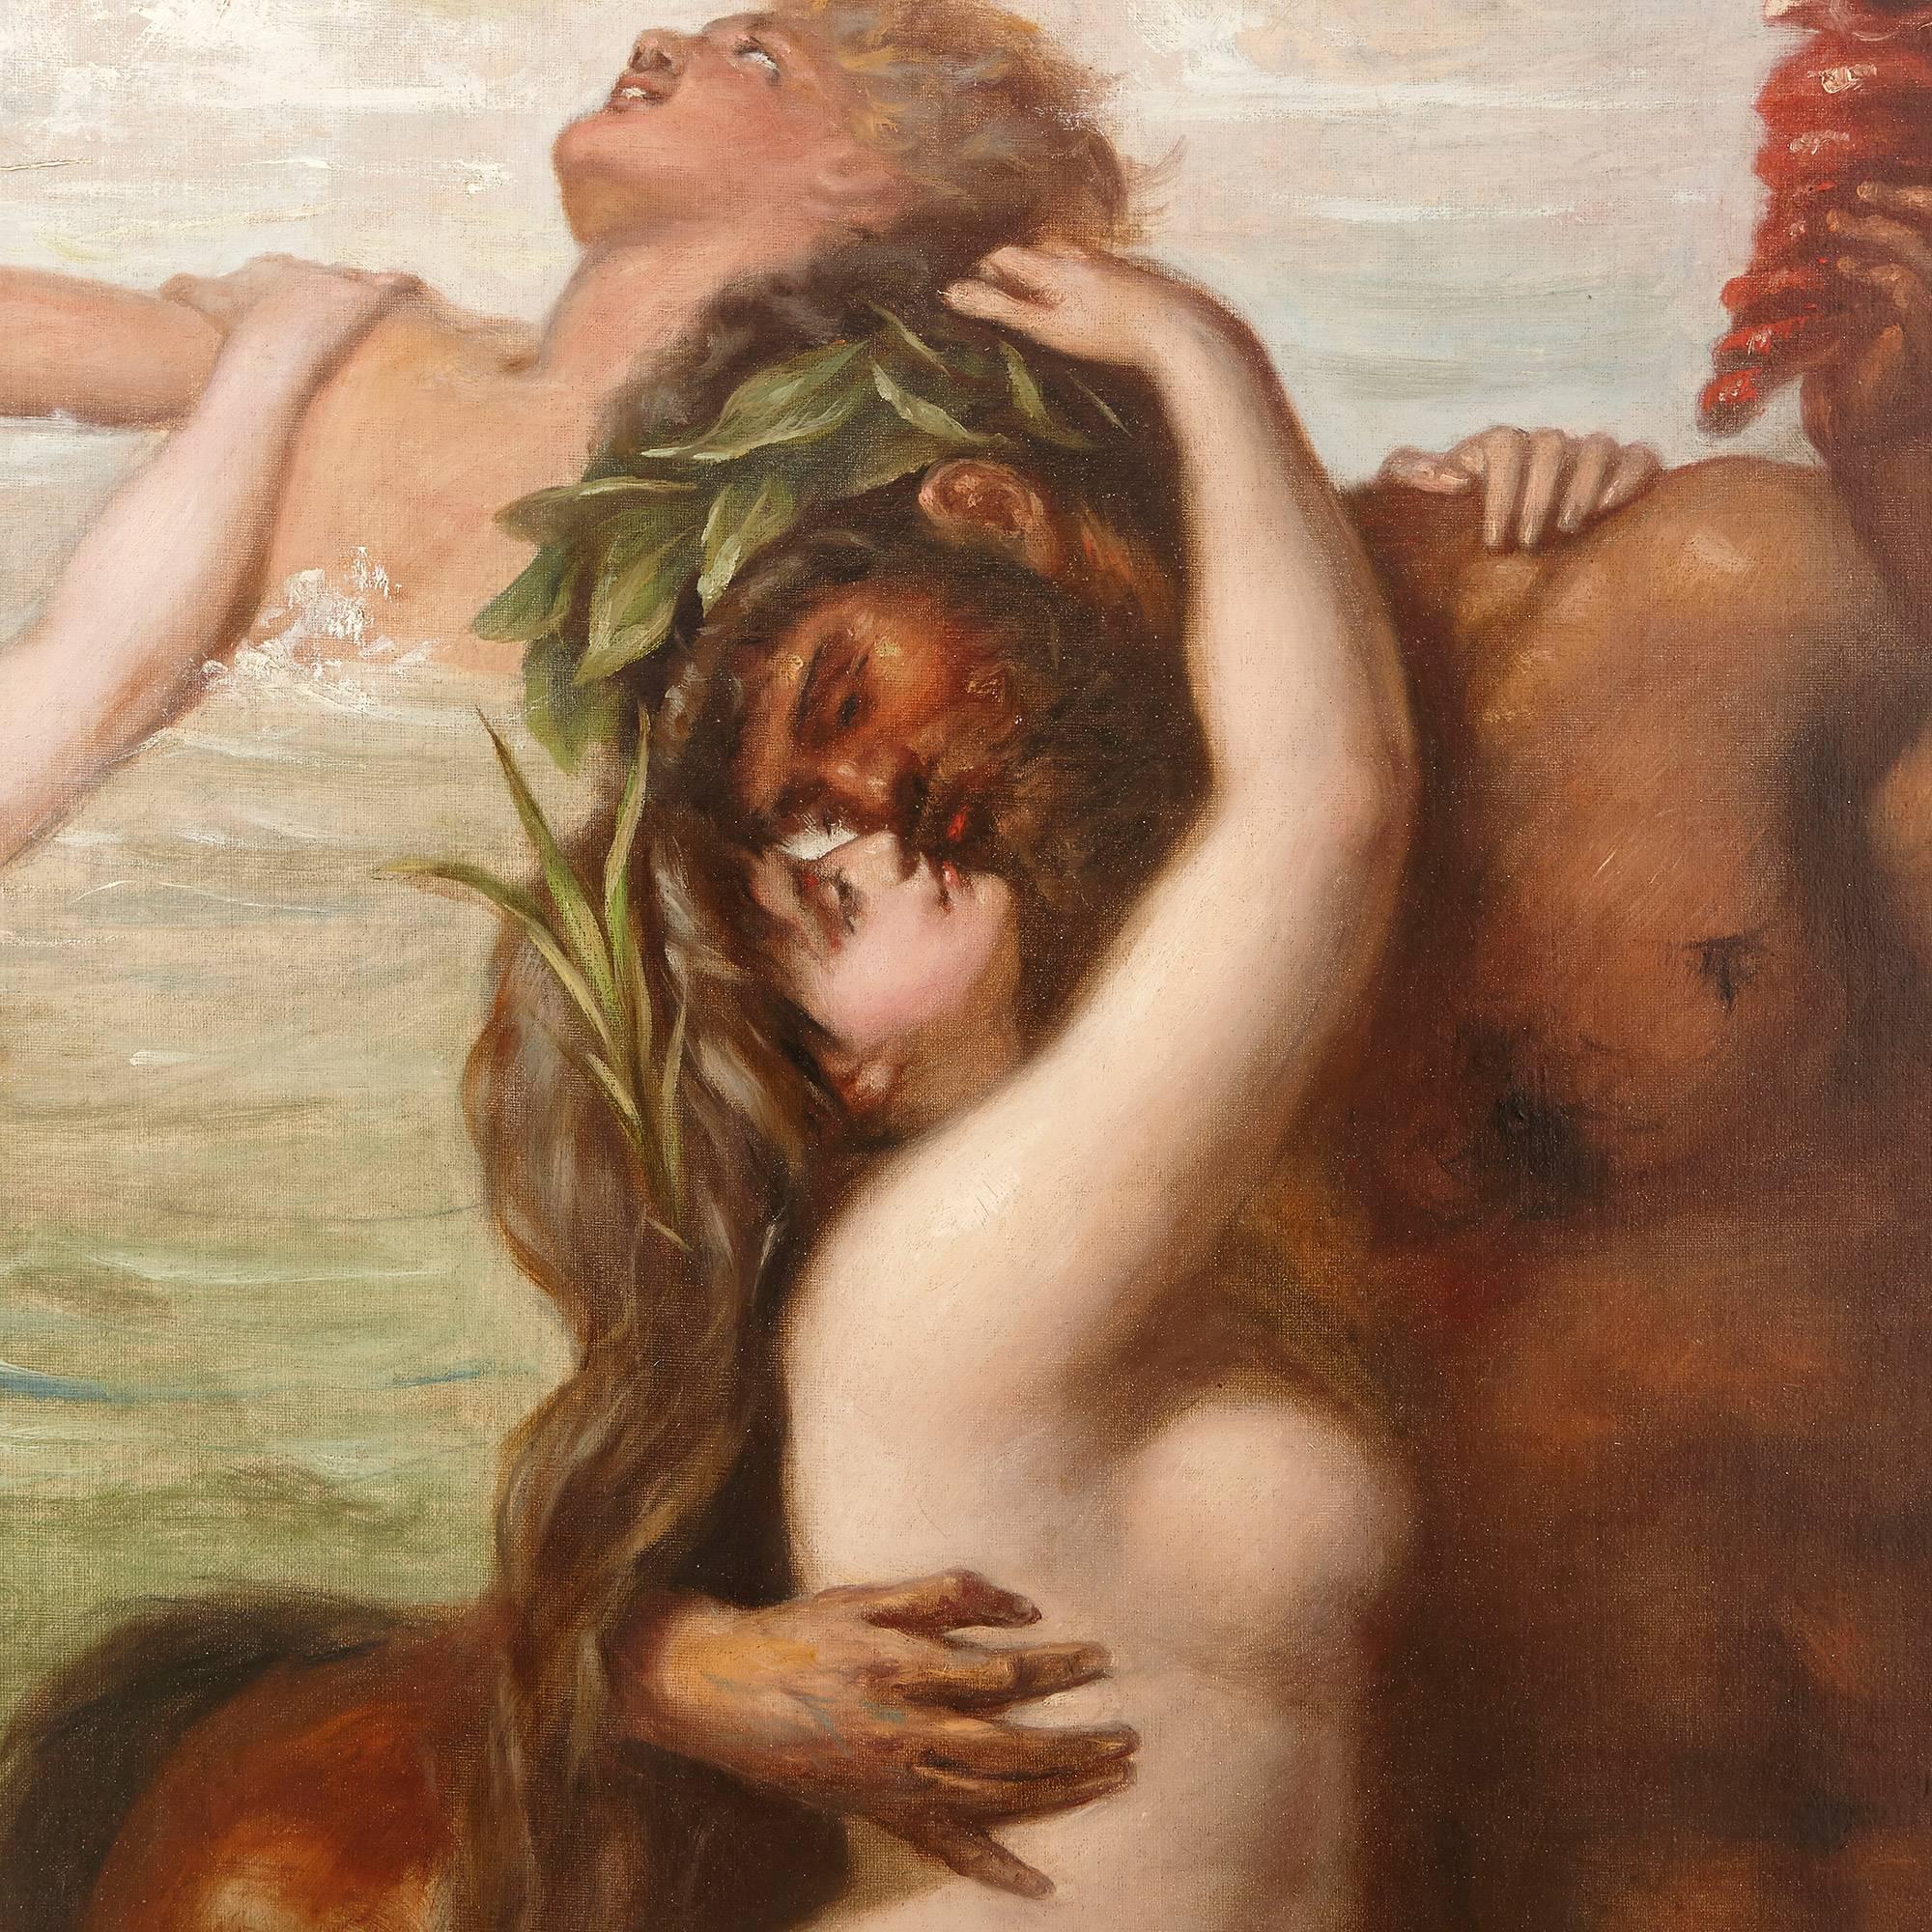 Oil painting of The Triumph of Venus - Beige Figurative Painting by Rudolf Friedrich von Deutsch